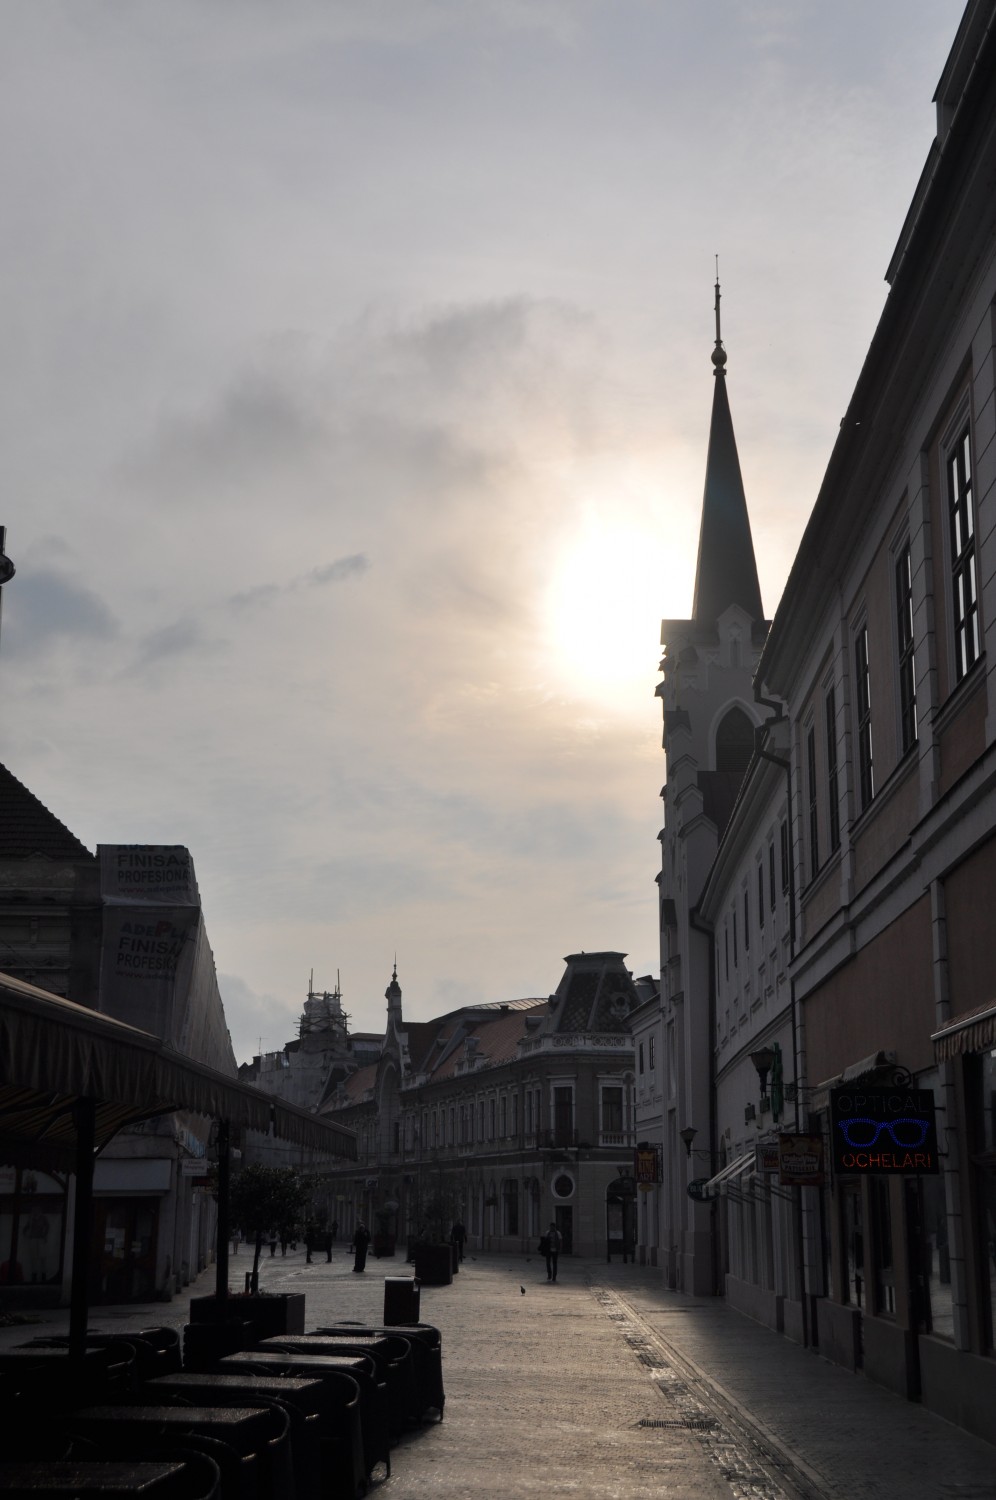 The sunny pedestrian street in Oradea